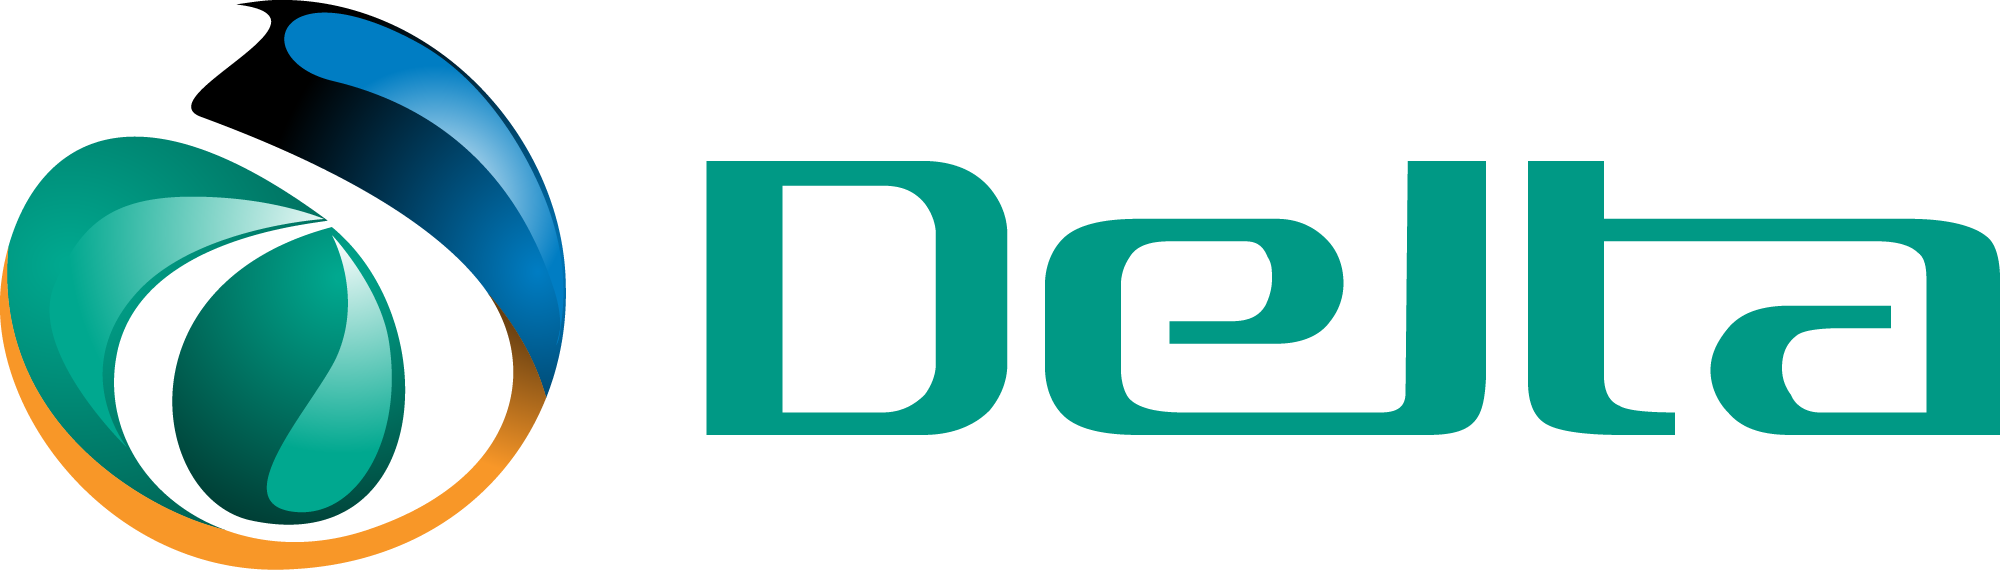 delta_logo_lg